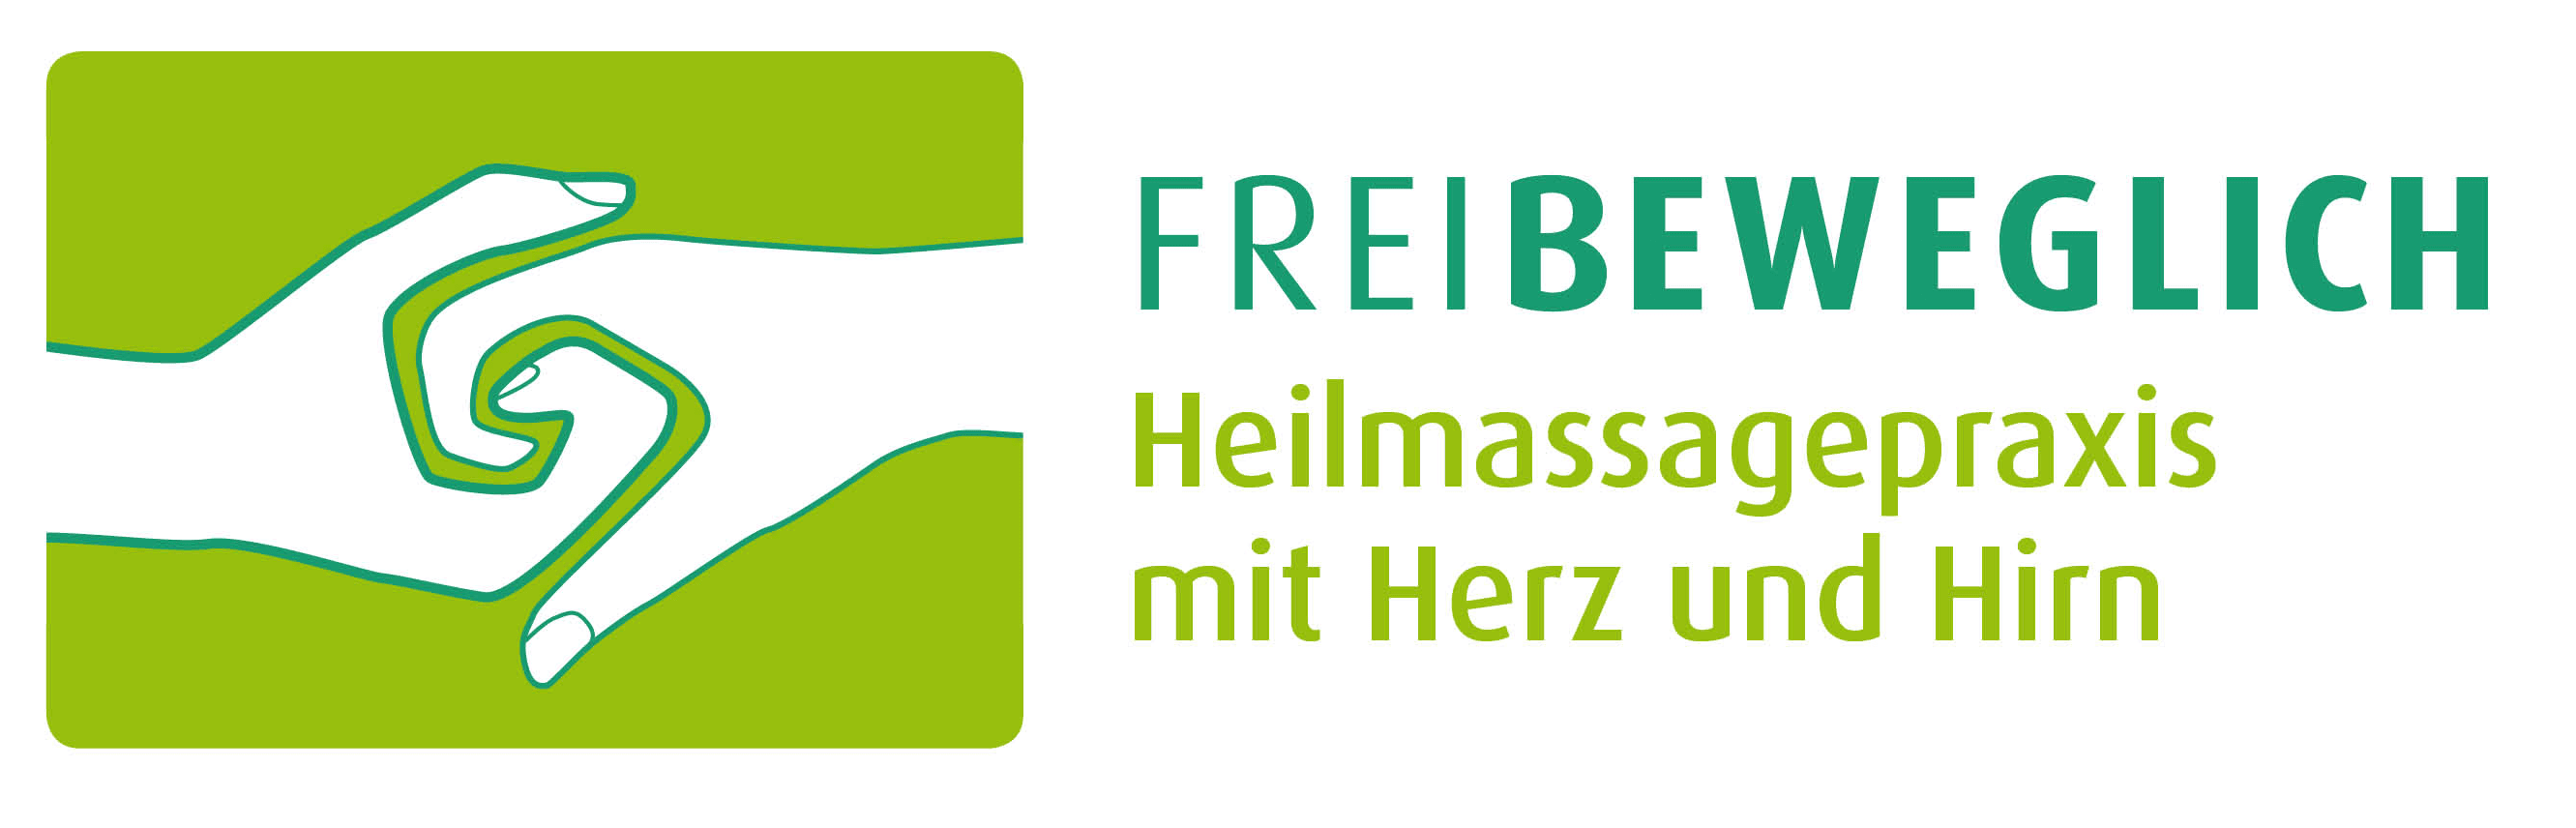 Vorschau - Foto 1 von FREIBEWEGLICH - Heilmassagepraxis mit Herz und Hirn - Stefanie Holzmann und Philipp Wölfler